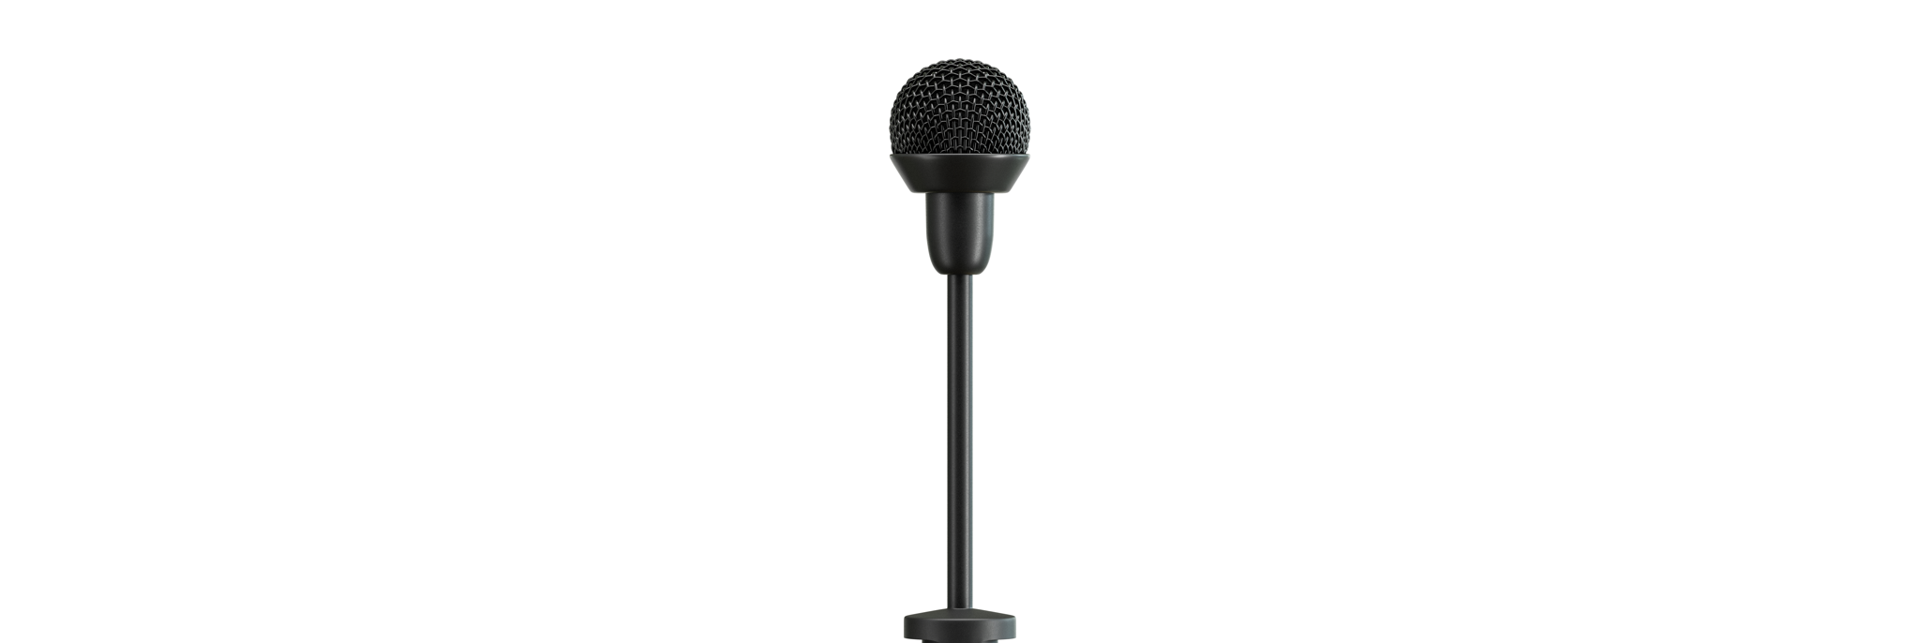 Sennheiser introduceert nieuwe microfoon voor presentatoren